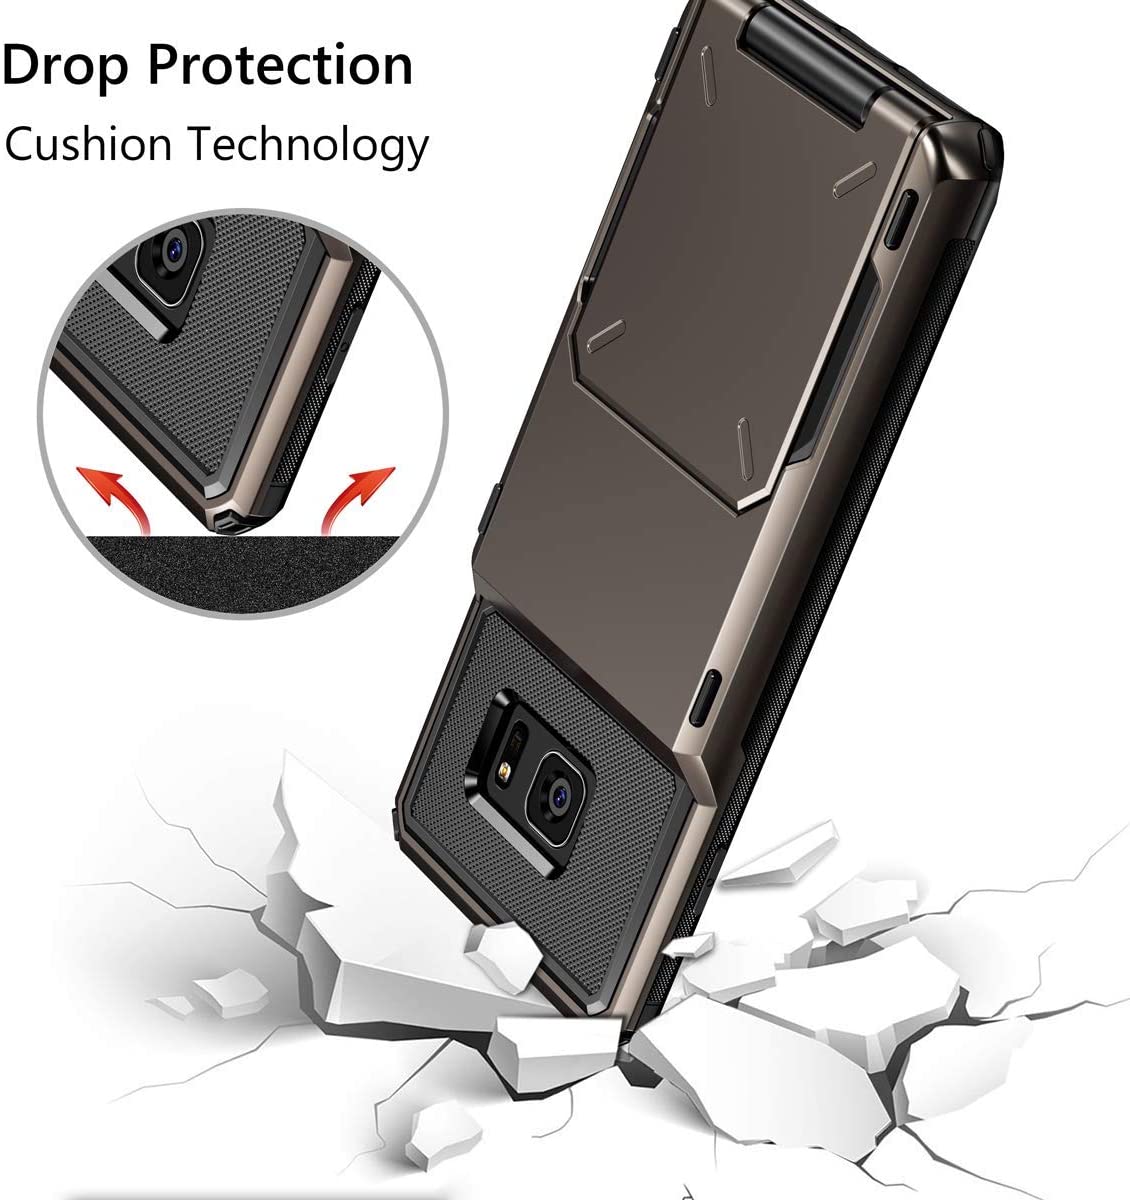 Vofolen Cover for Galaxy S7 Case Wallet 4-Card Holder -  Gun Metal - e4cents